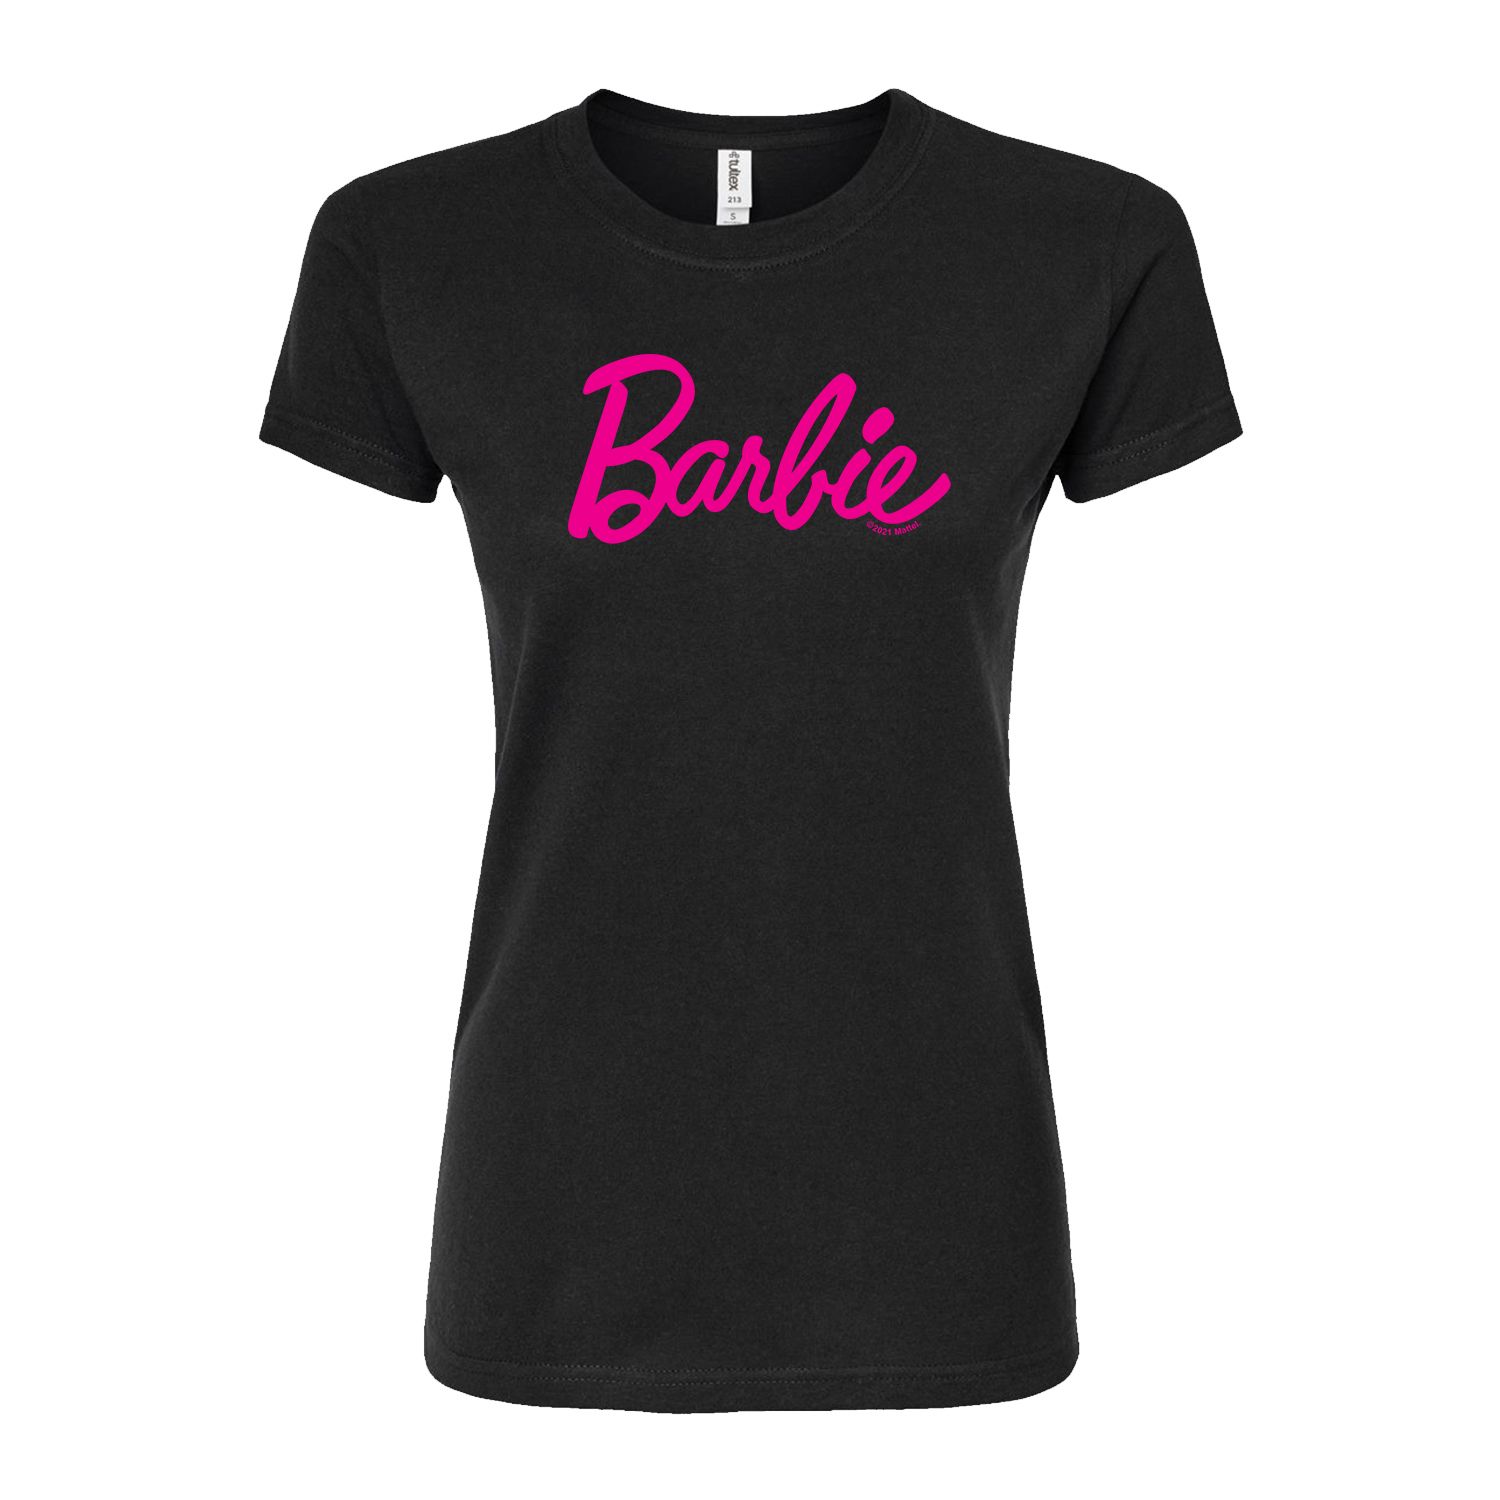 Классическая футболка с логотипом Barbie для юниоров Licensed Character, черный классическая футболка с логотипом barbie для юниоров licensed character